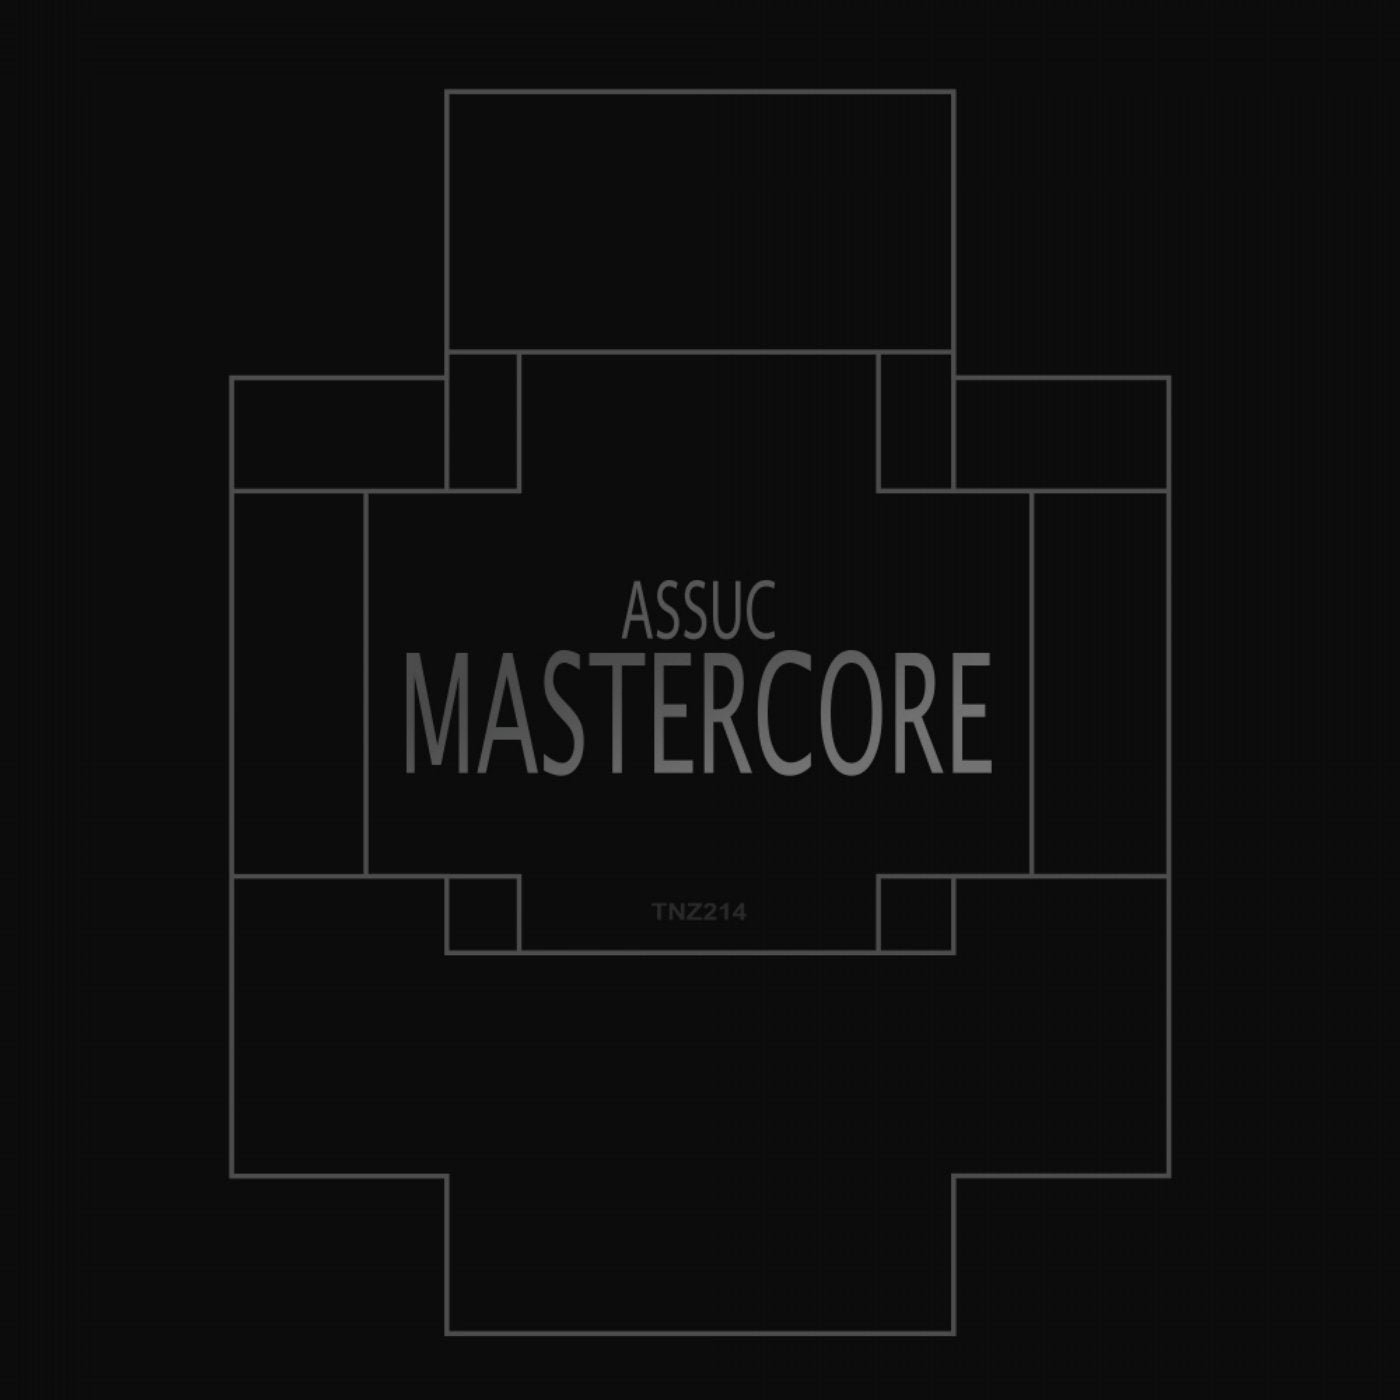 Mastercore